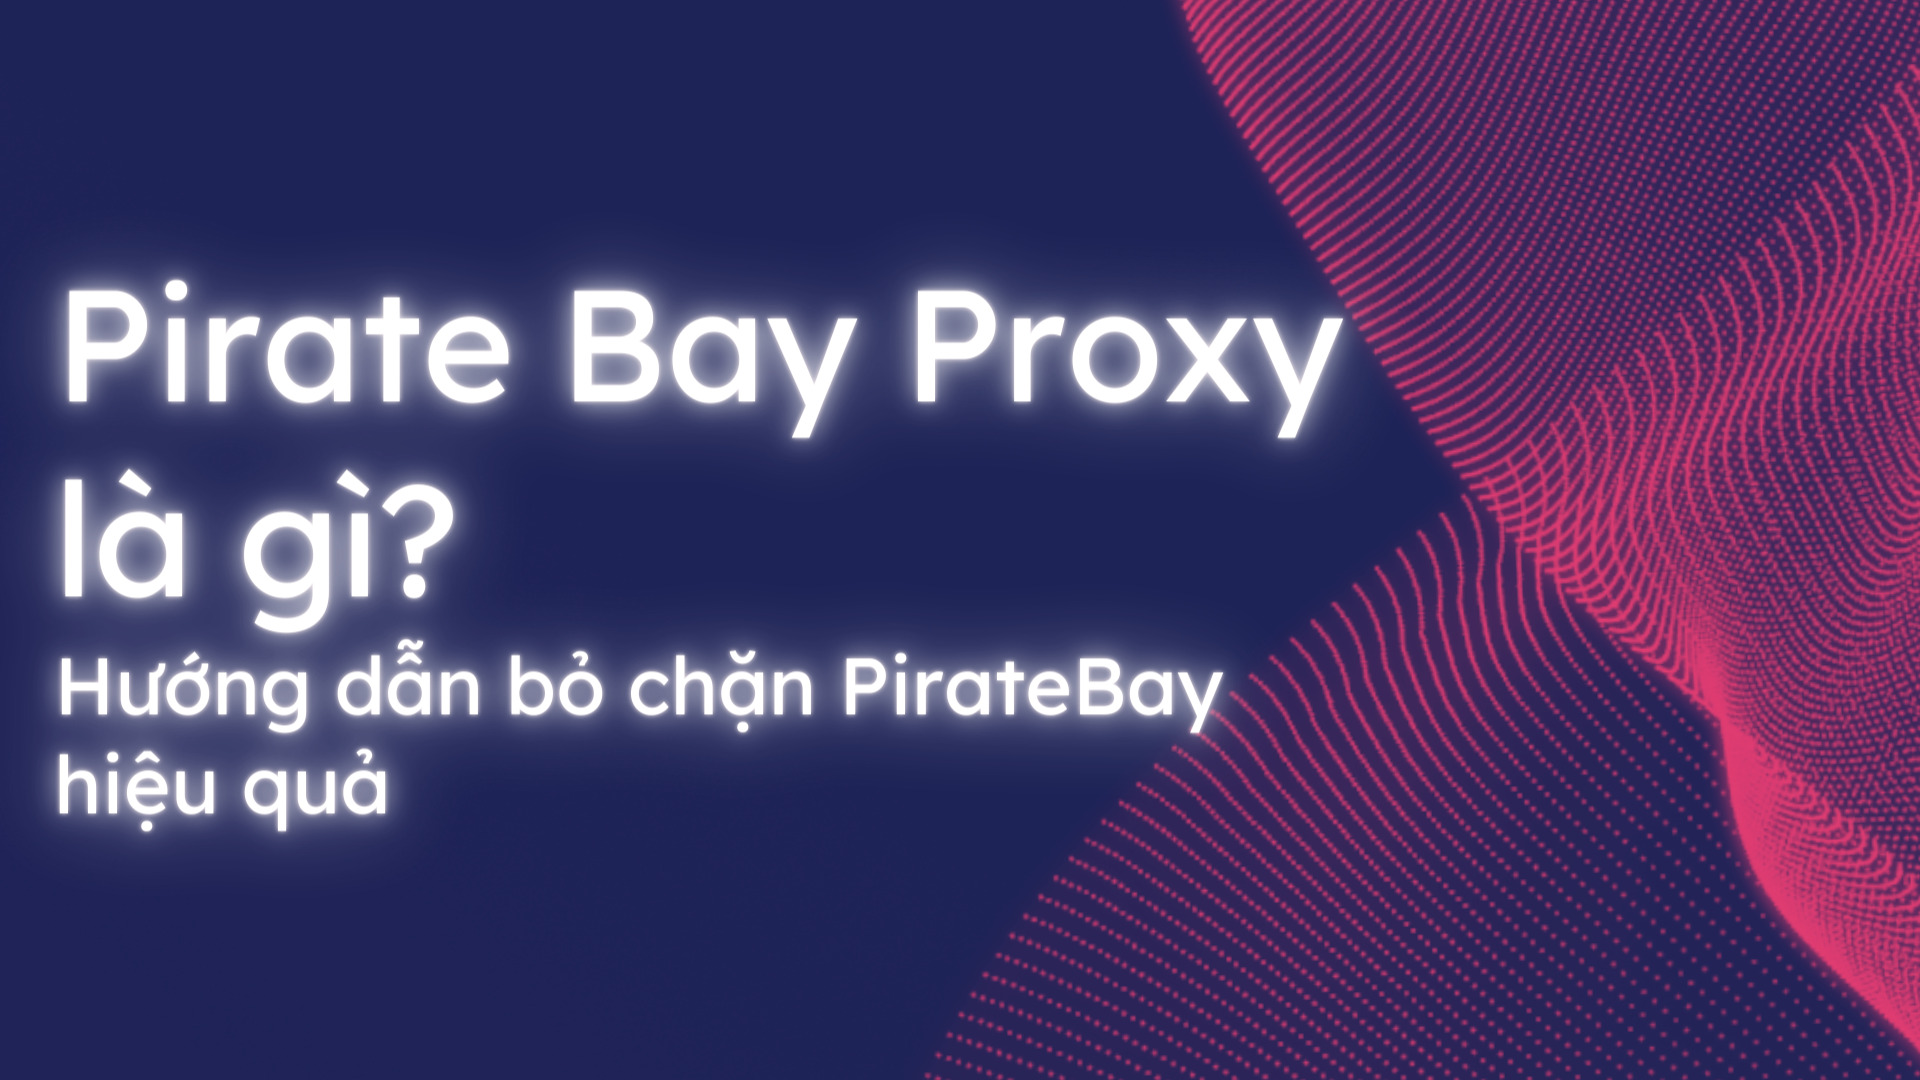 Pirate Bay Proxy là gì? Hướng dẫn bỏ chặn Piratebay hiệu quả